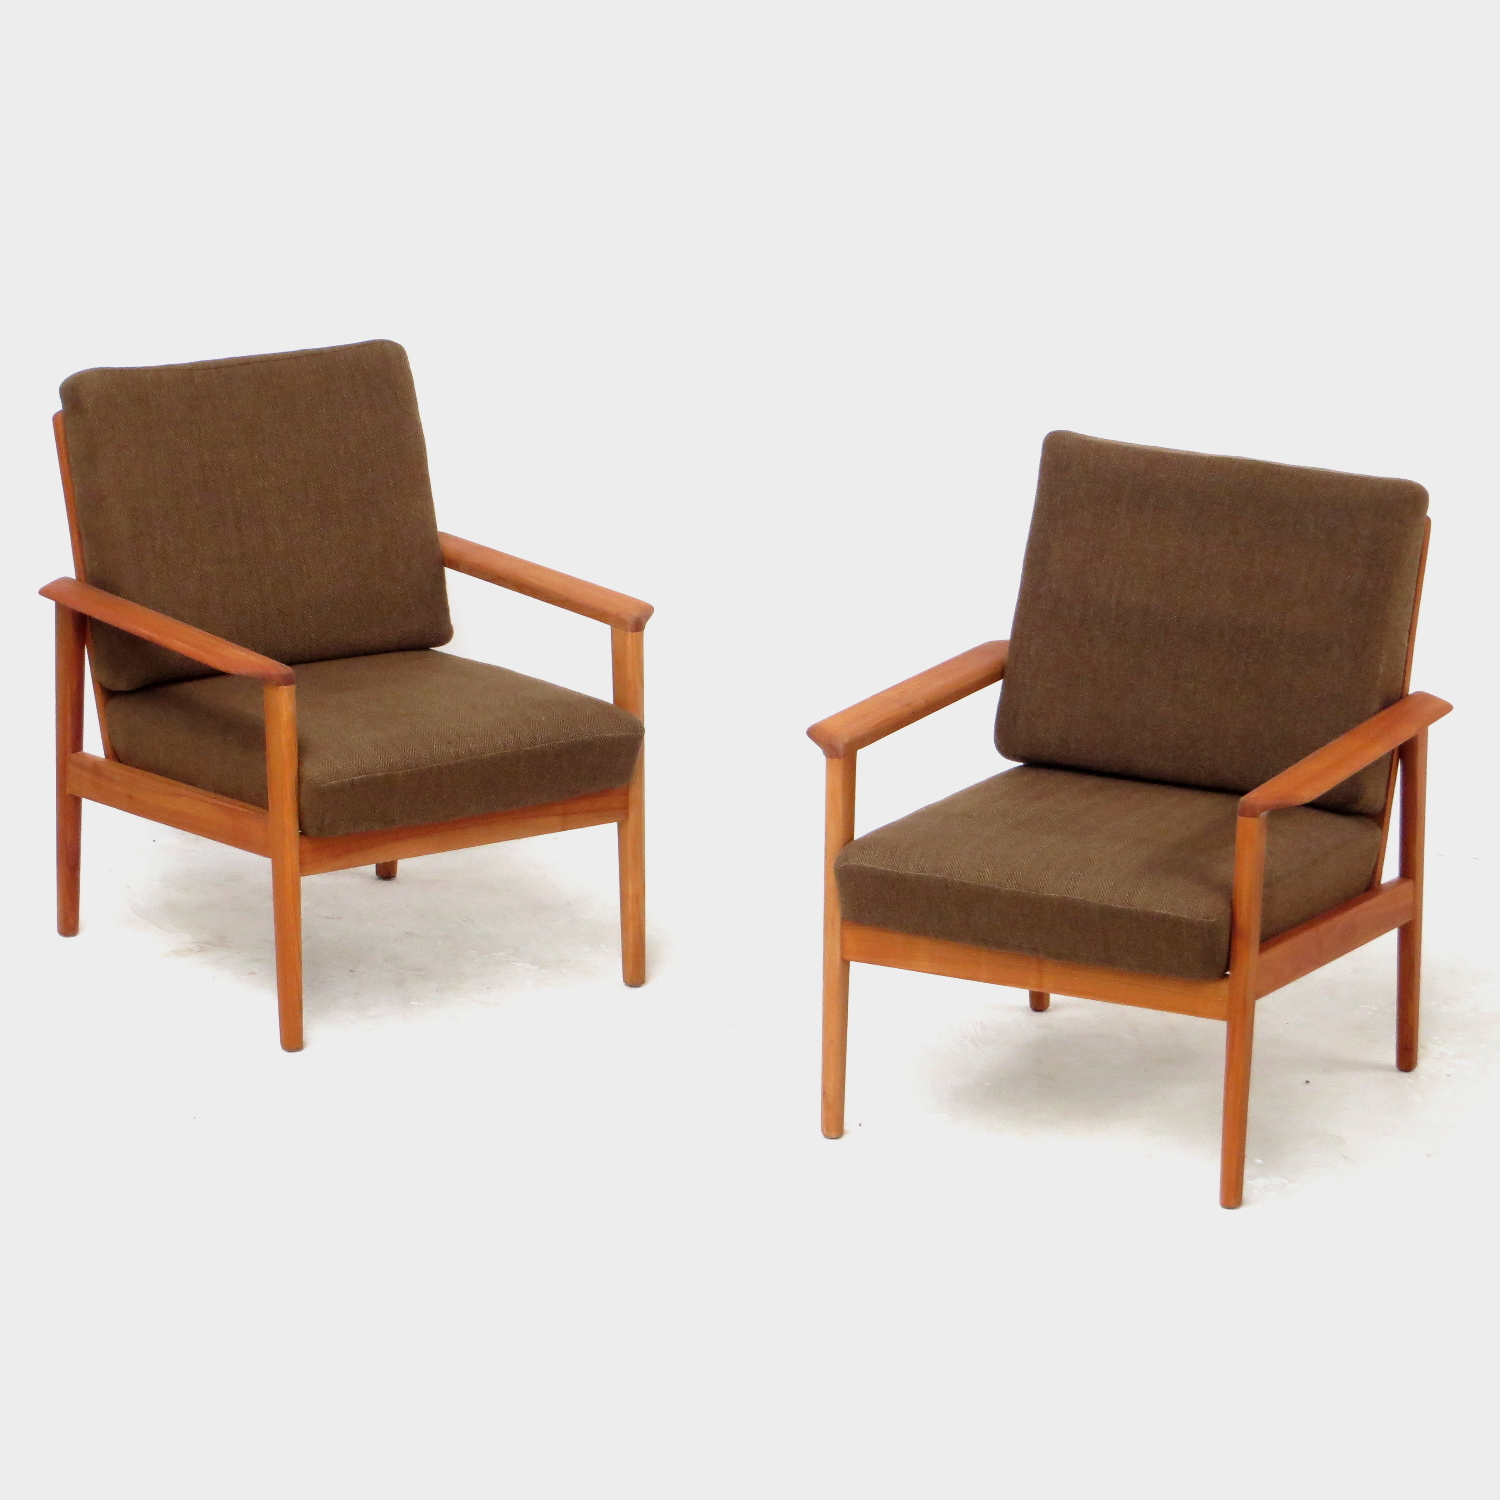 Foto van de voorkant van de twee vintage design fauteuils